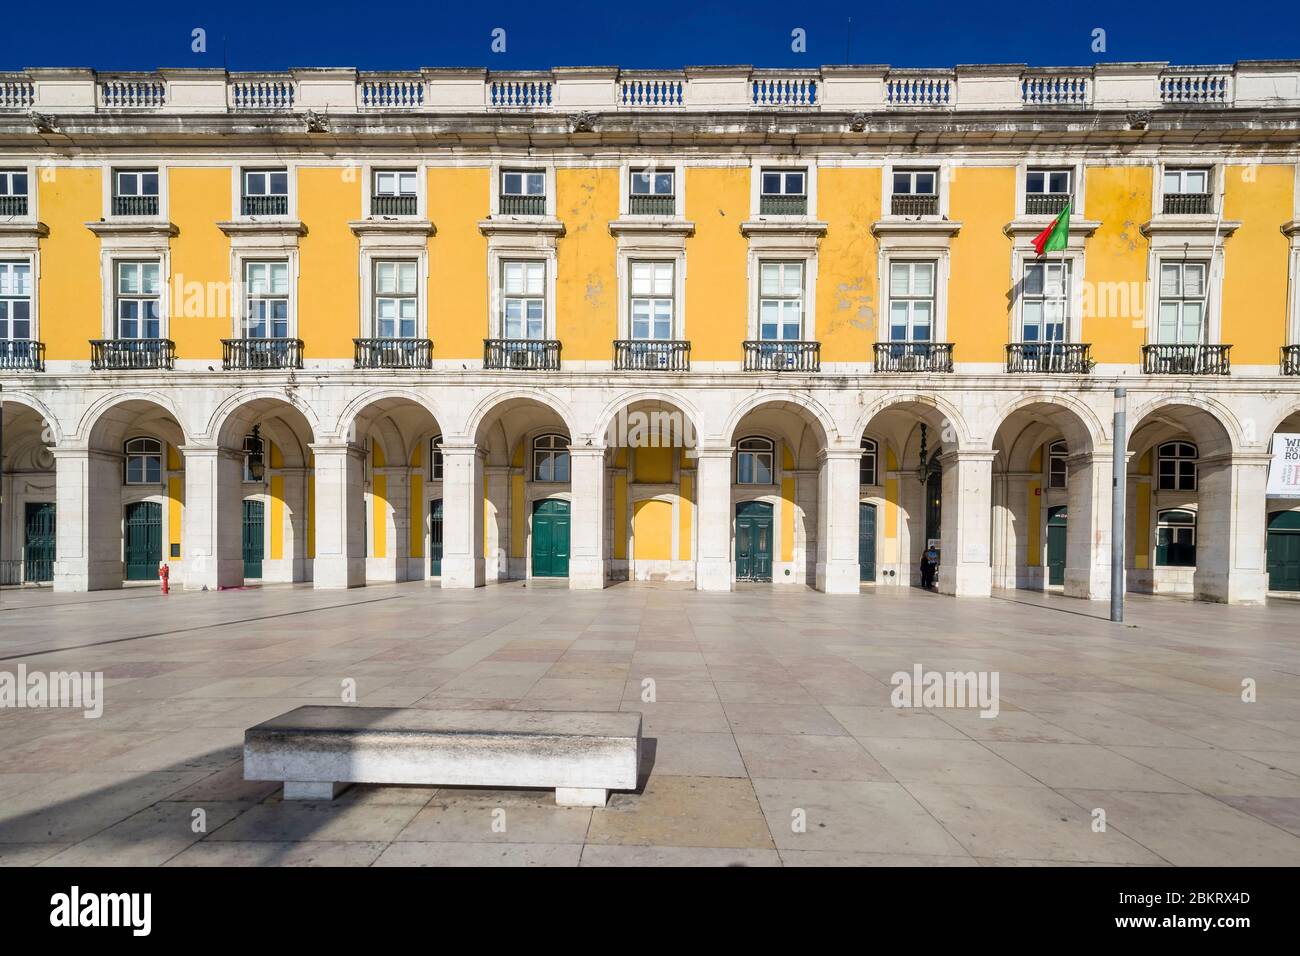 Portugal, Lissabon, Baixa, Handelsplatz, Ministerium für das Meer, nach dem Erdbeben von 1755 wieder aufgebaut, der Handelsplatz ist von safrangelben Gebäuden (Ministerien, Bars, Restaurants und Tourismusbüro) umgeben Stockfoto